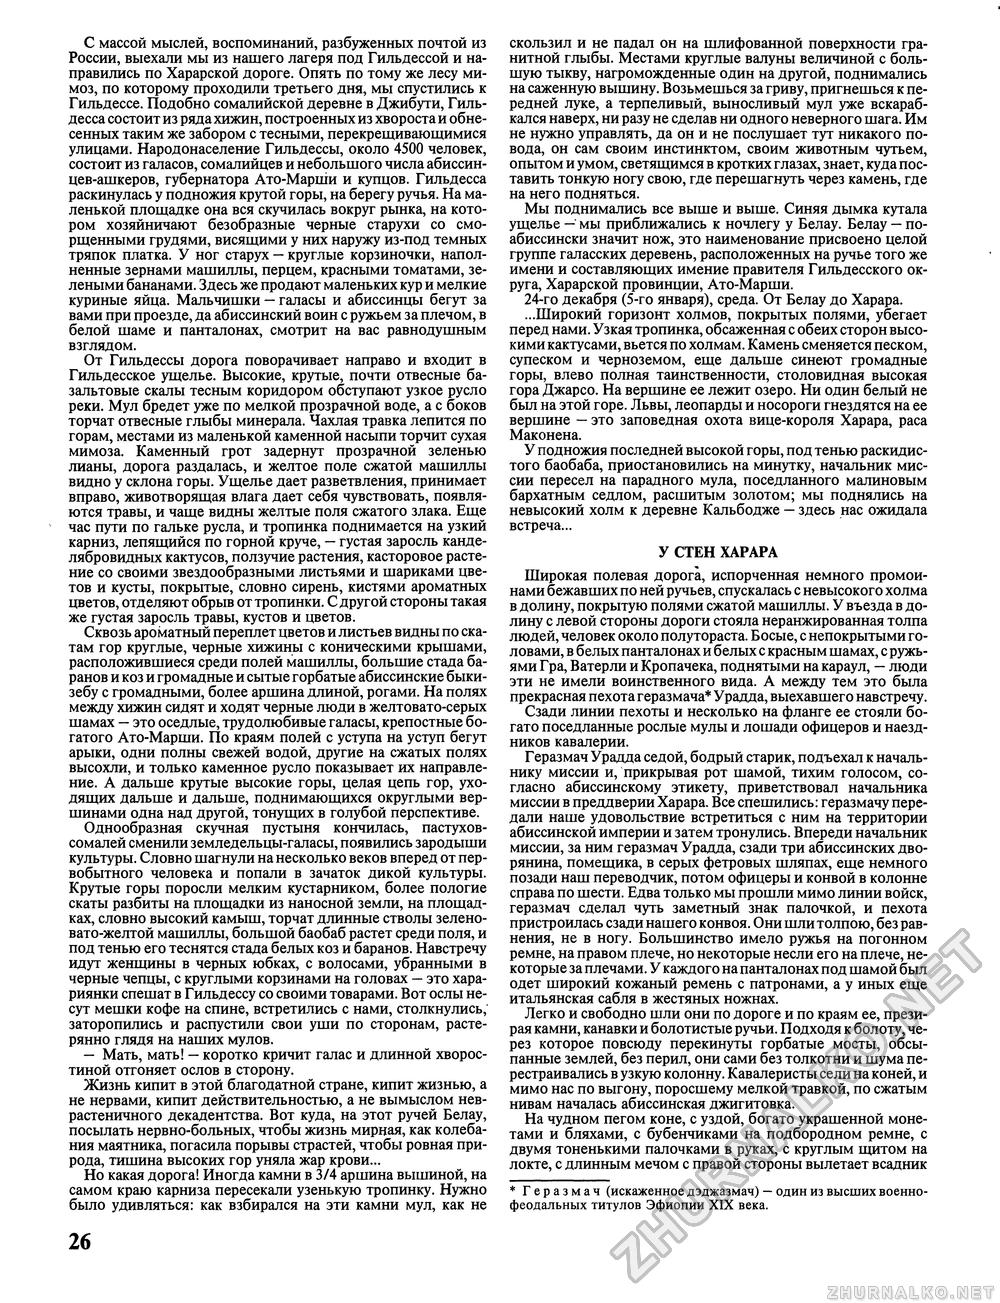 Вокруг света 1991-10, страница 28